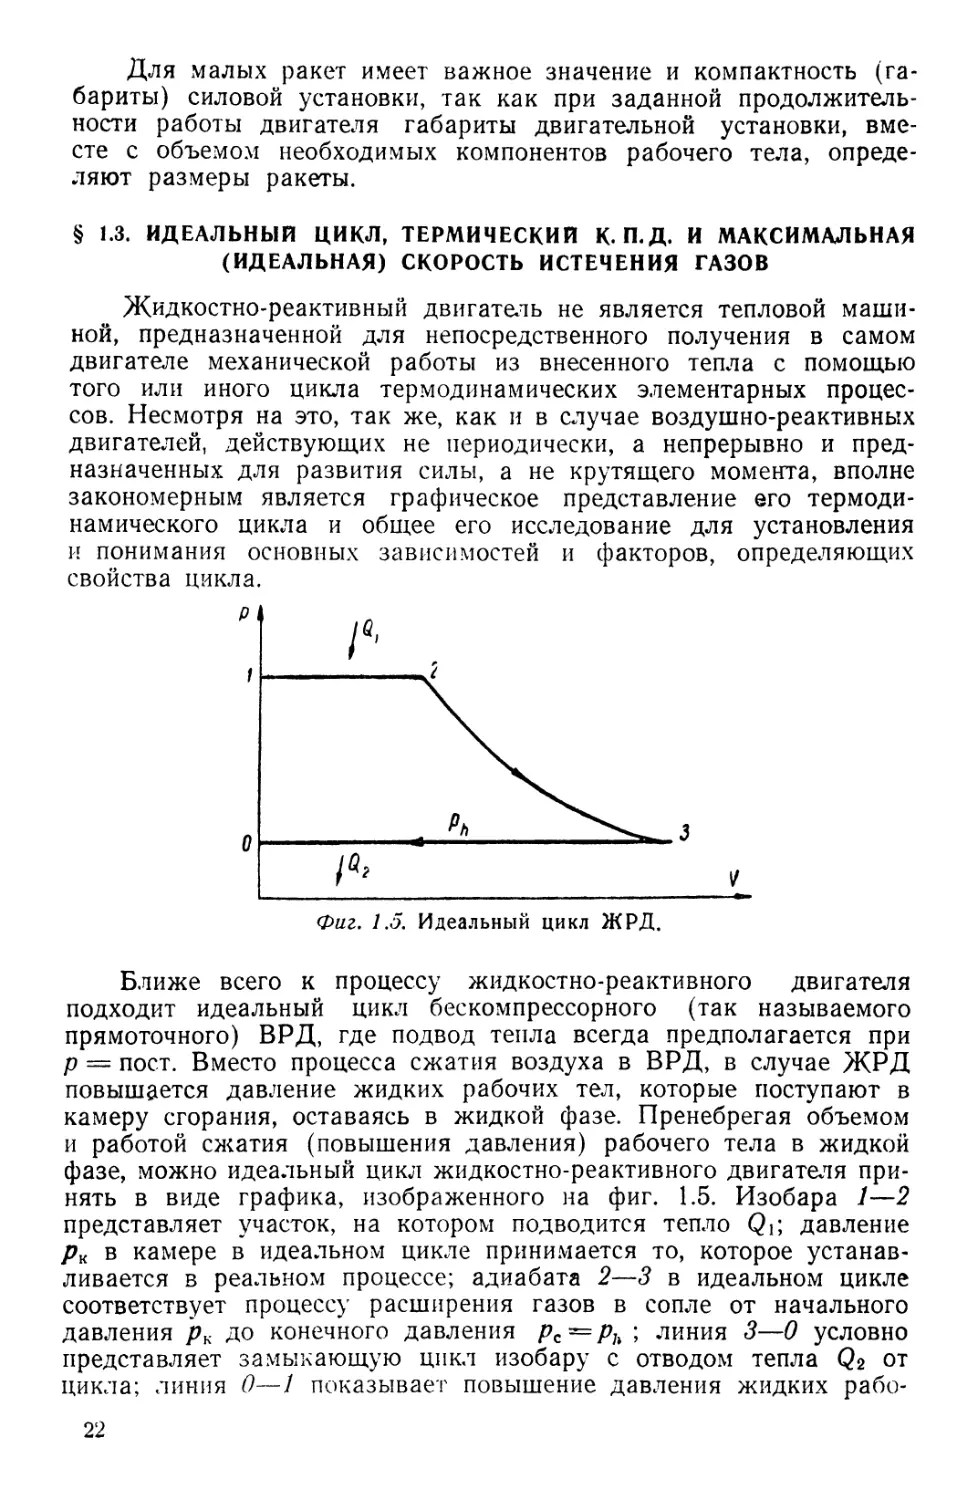 § 1.3. Идеальный цикл, термический к.п.д. и максимальная скорость истечения газов